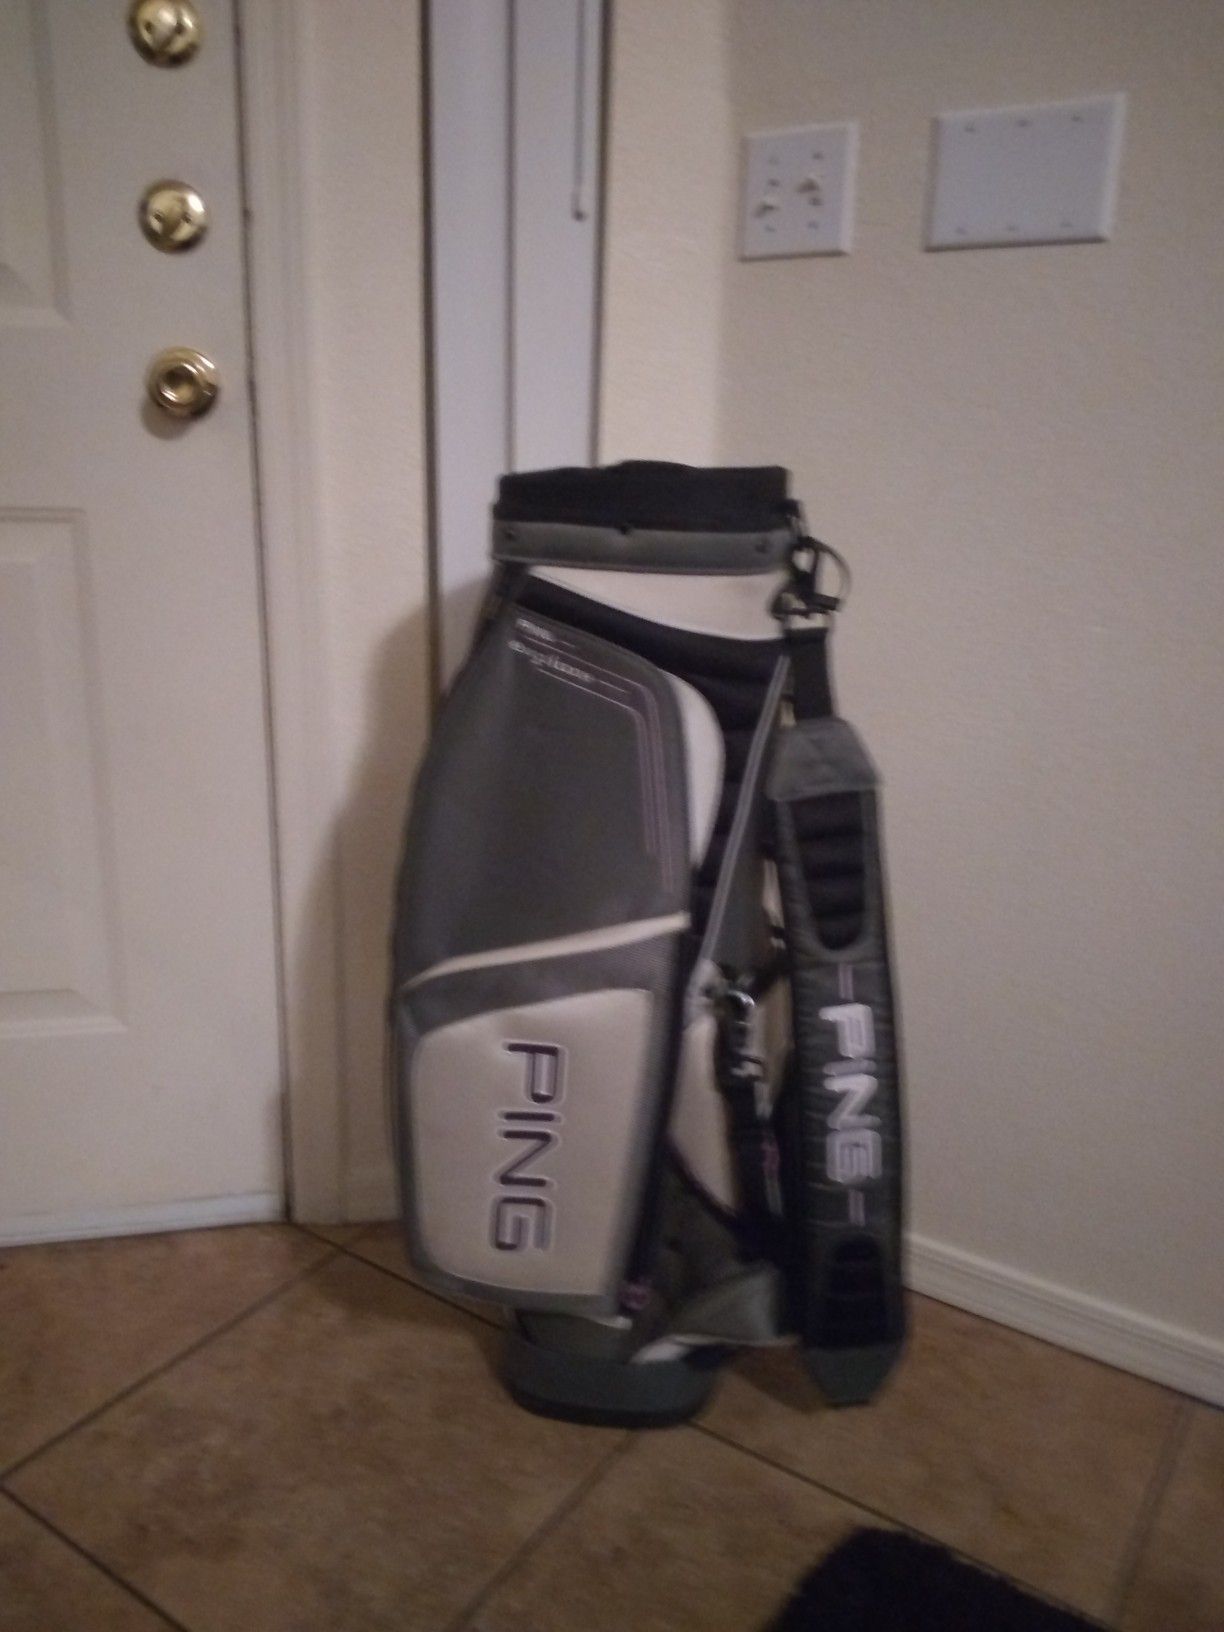 Ping golf bag